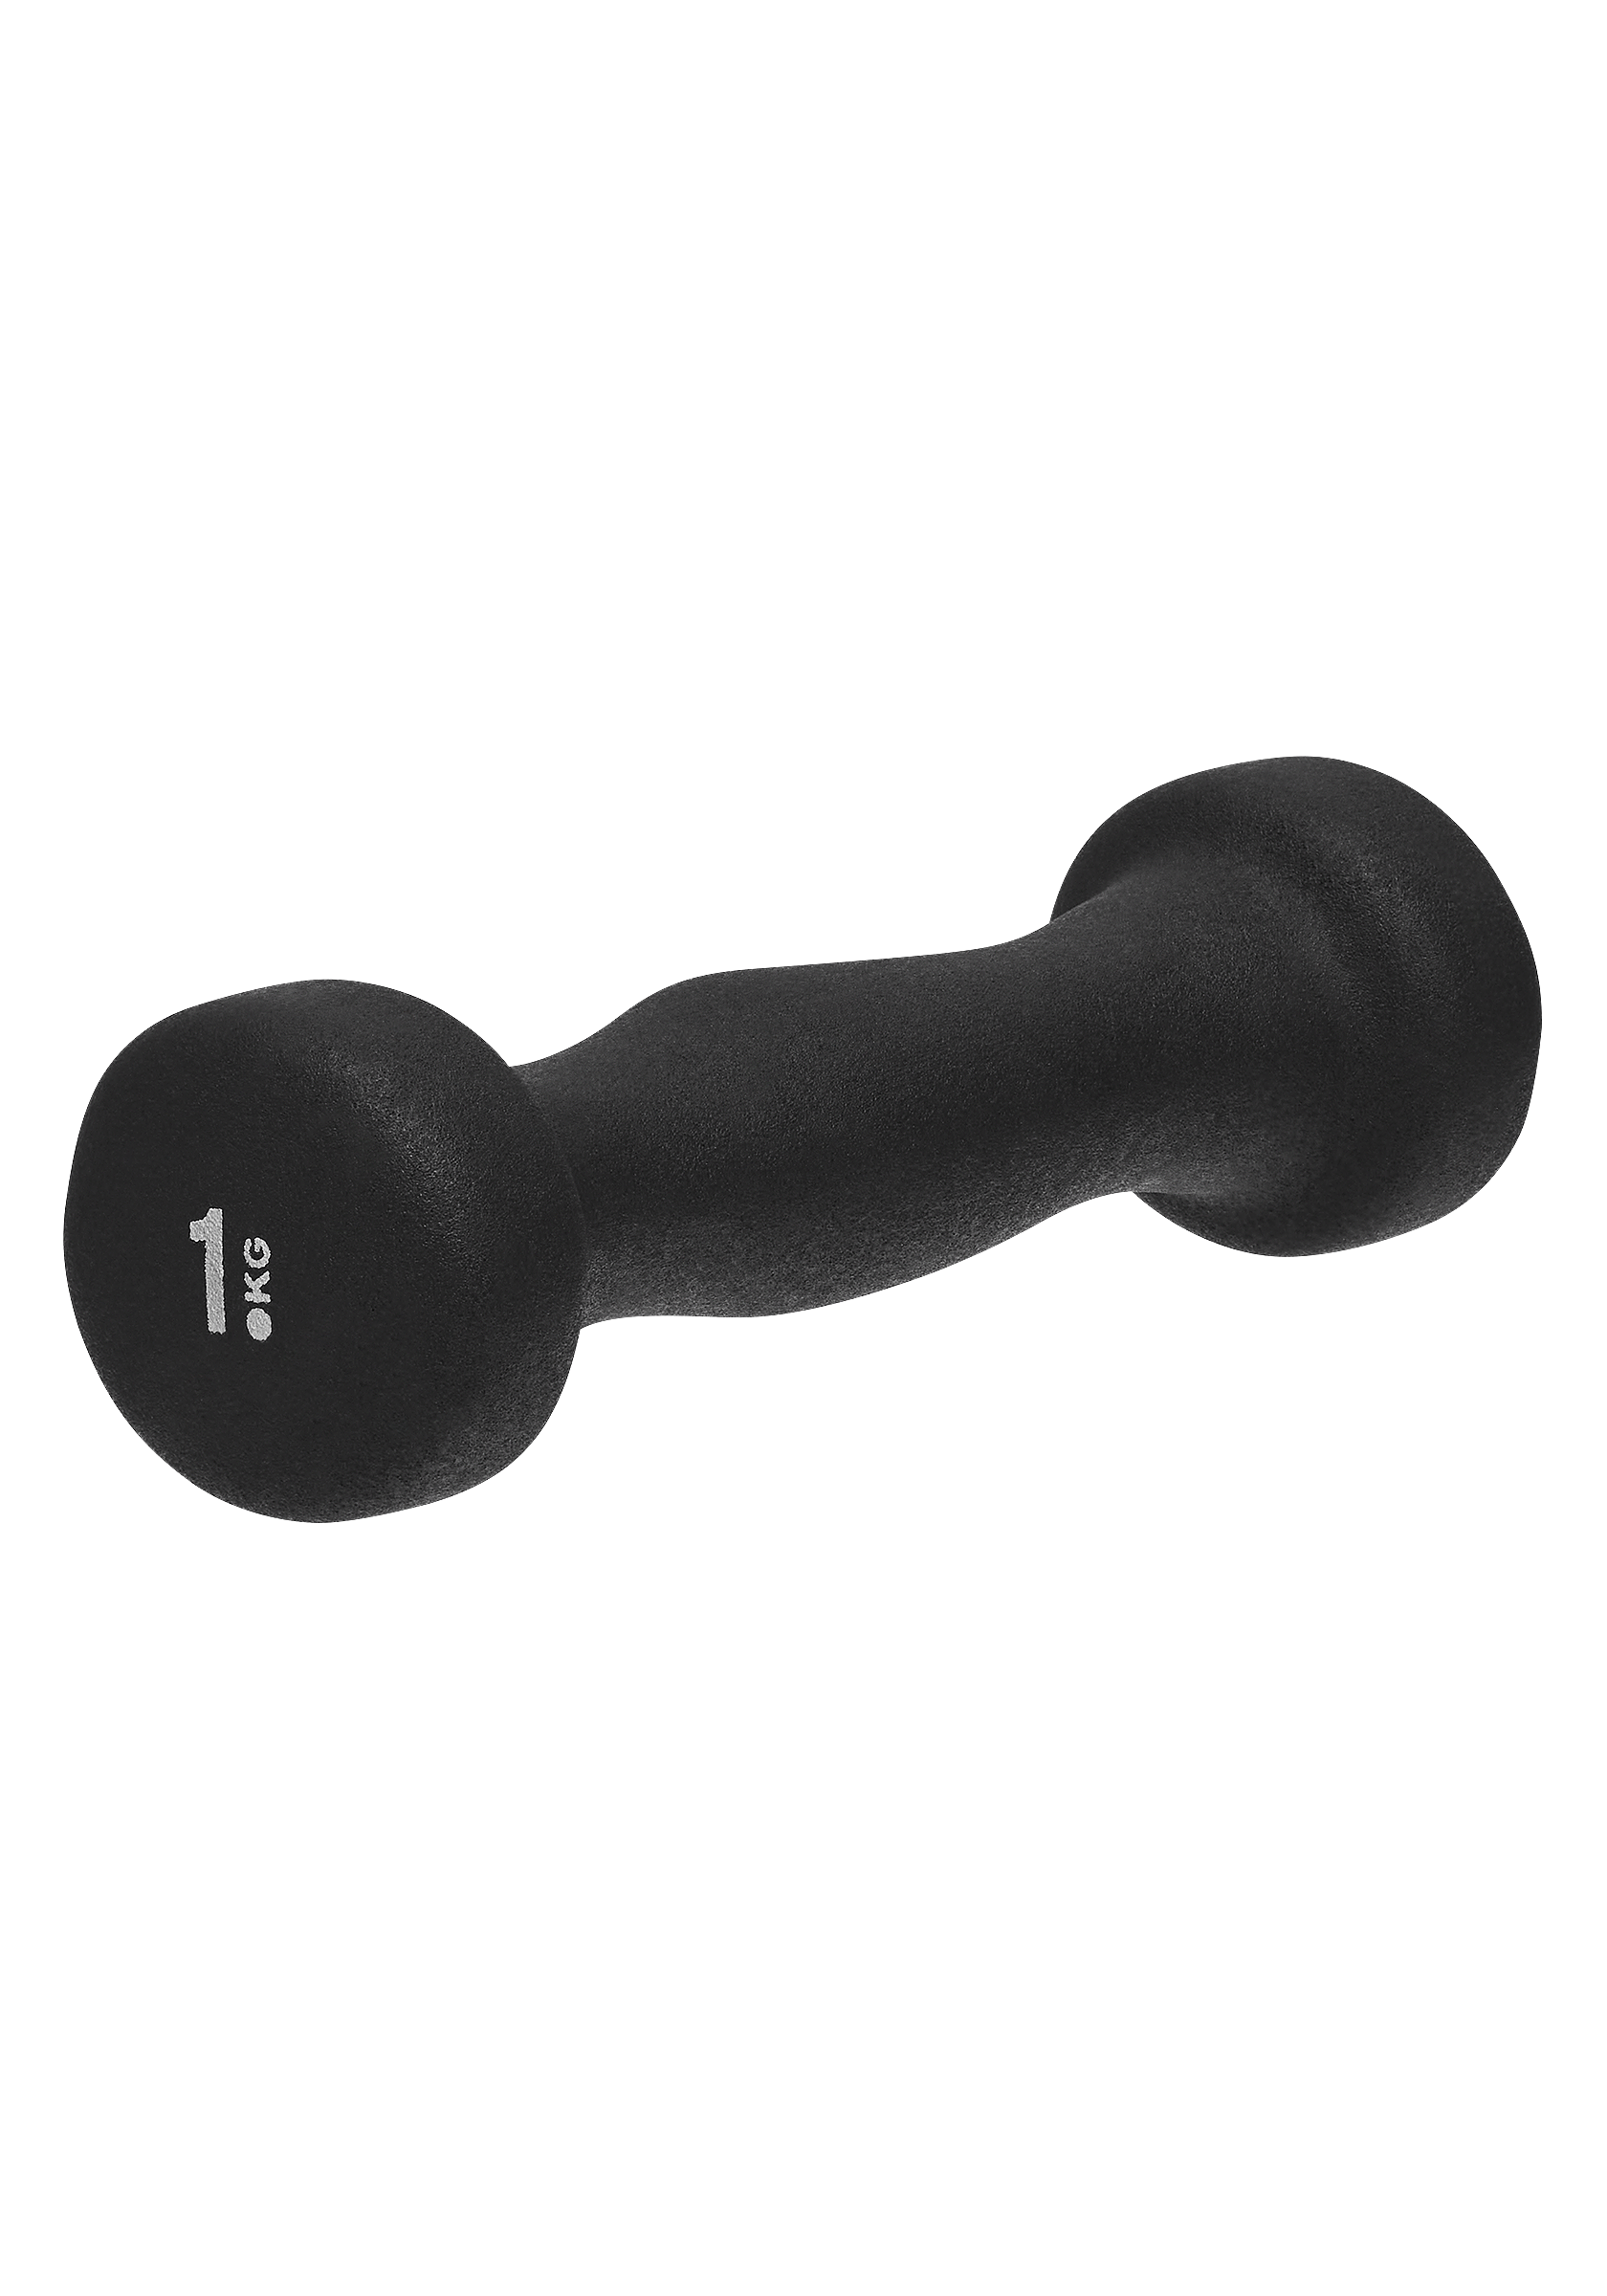 Dumbbell grip 1 kg - Black